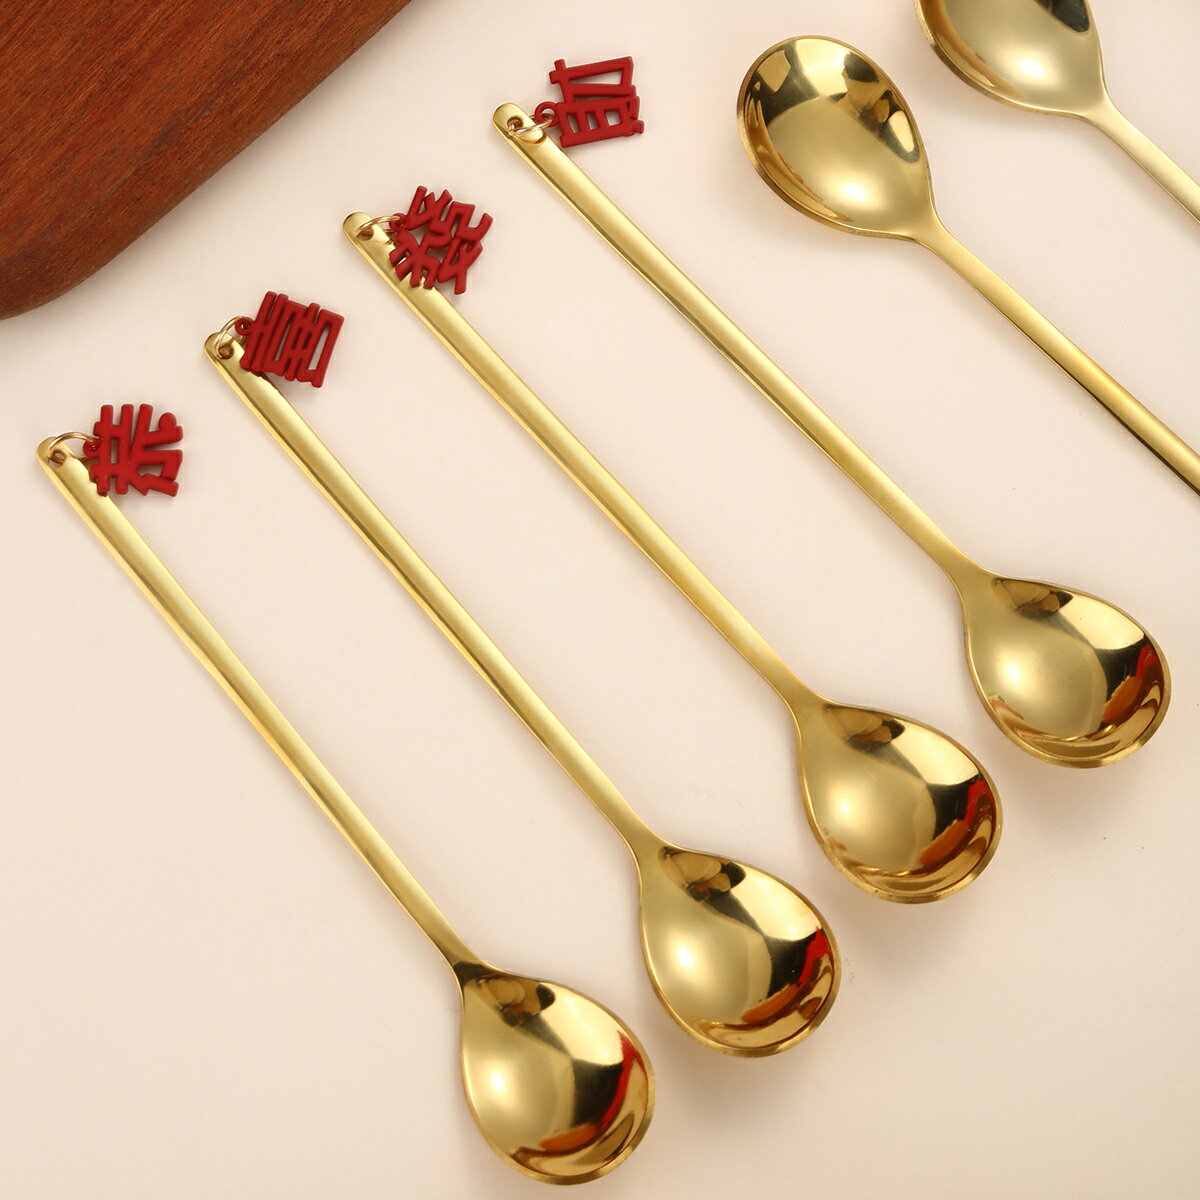 勺子 餐具組 湯匙 新年創意不鏽鋼咖啡甜品攪拌勺水果叉水杯勺子新春中國風禮品『TS5431』